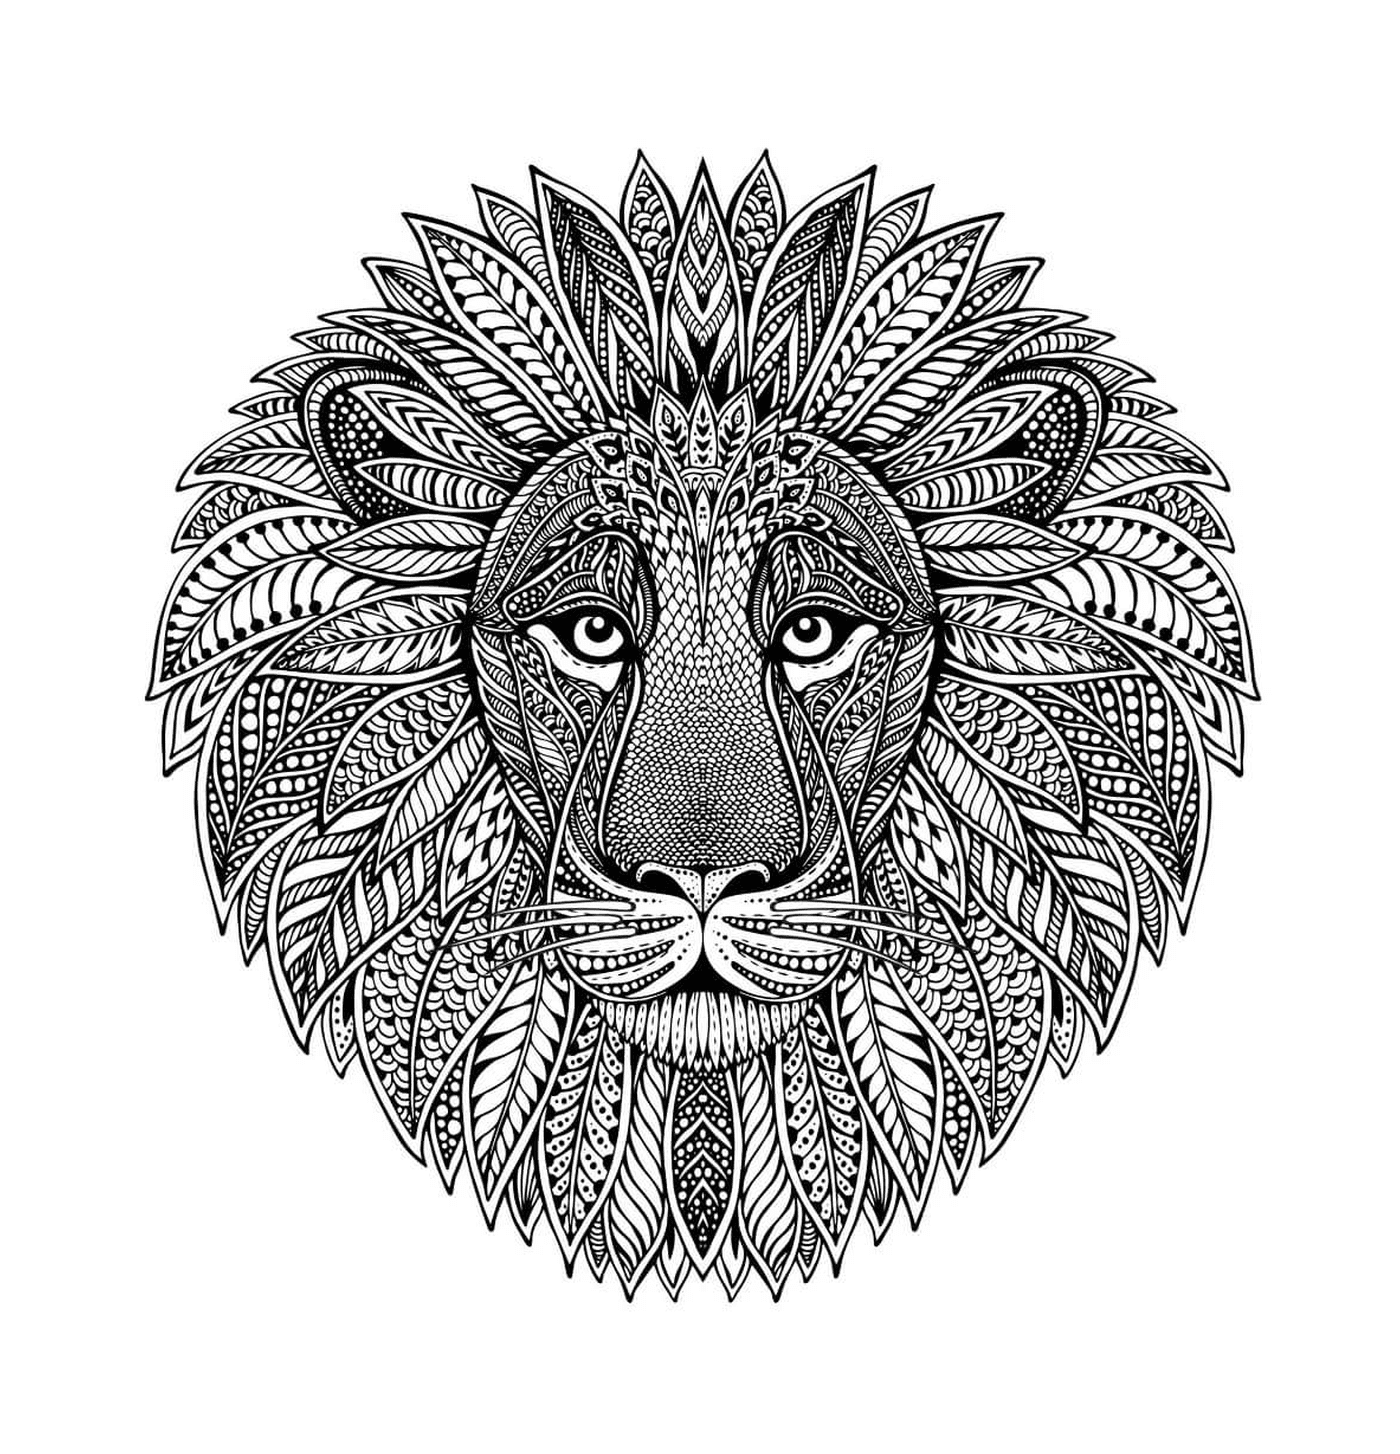  Lion's head 